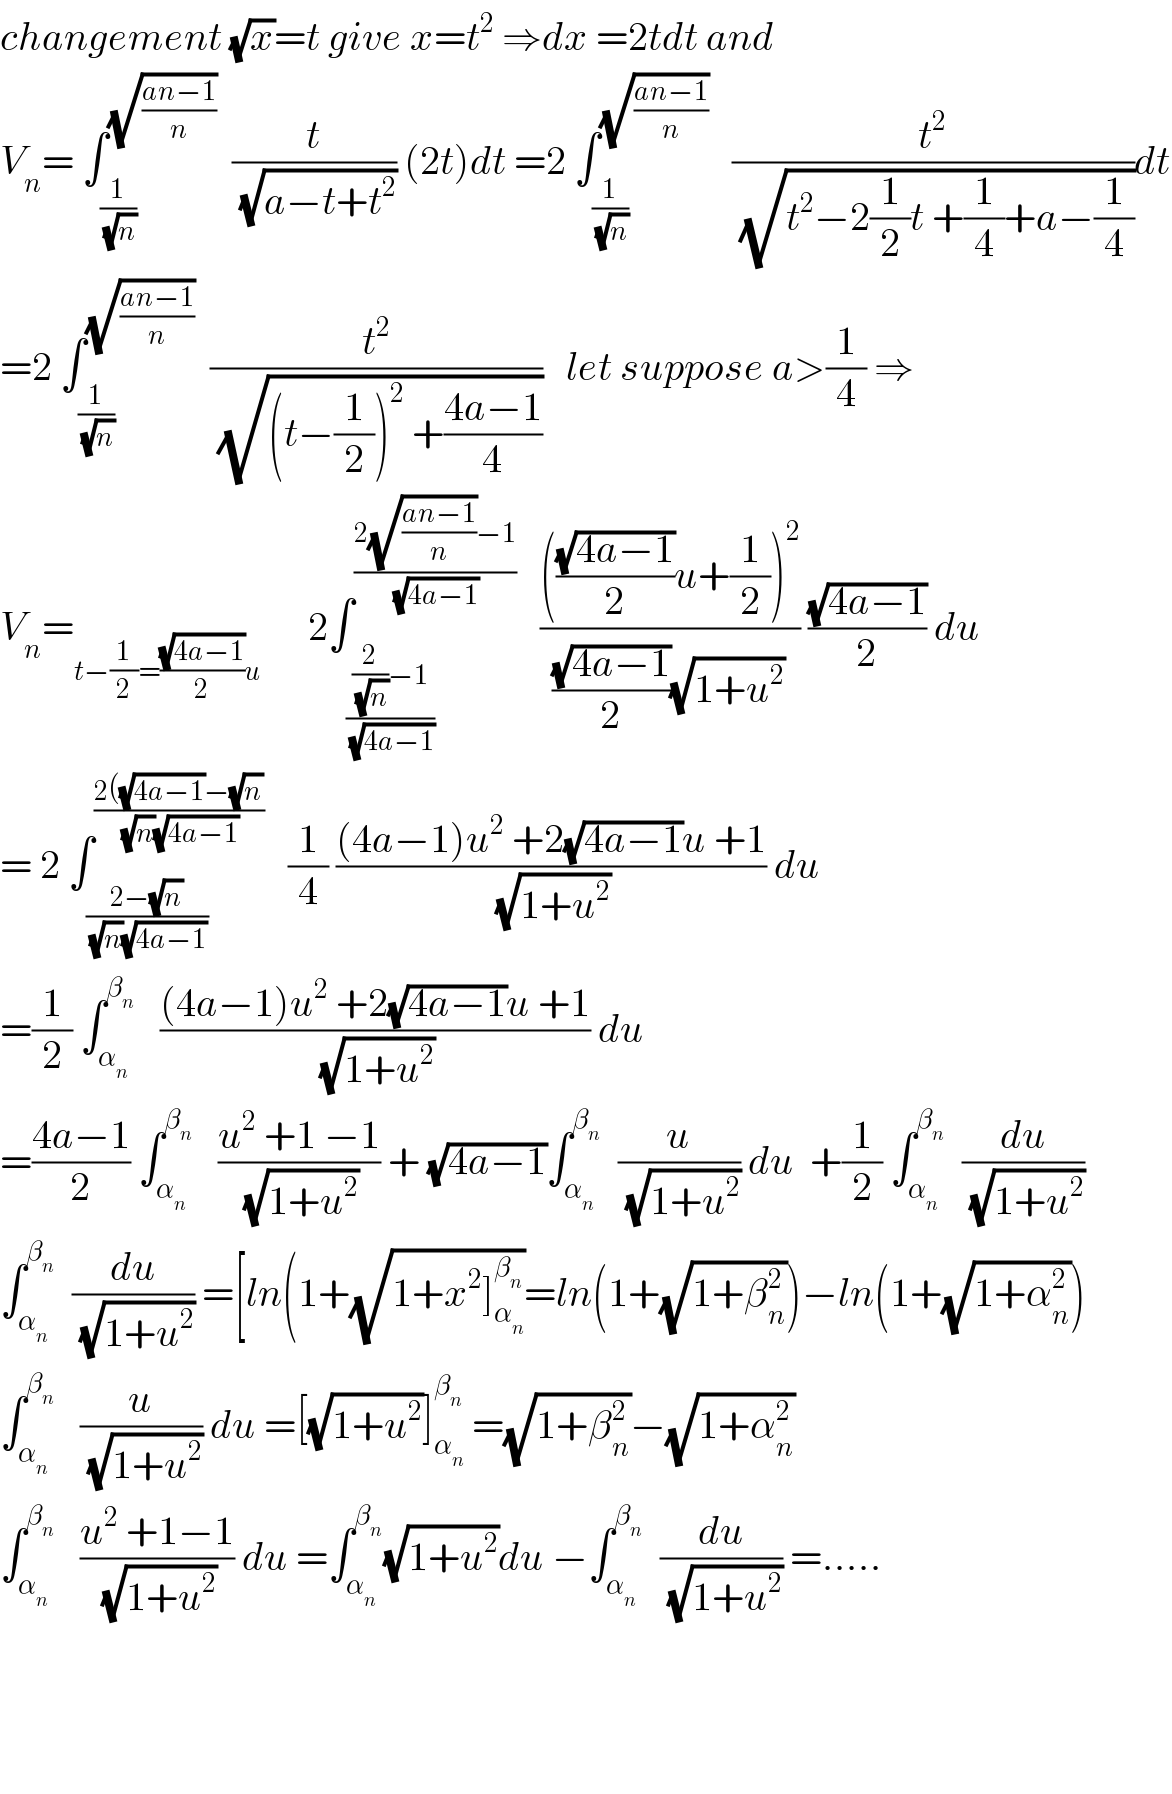 changement (√x)=t give x=t^2  ⇒dx =2tdt and  V_n = ∫_(1/(√n)) ^(√((an−1)/n))   (t/(√(a−t+t^2 ))) (2t)dt =2 ∫_(1/(√n)) ^(√((an−1)/n))    (t^2 /(√(t^2 −2(1/2)t +(1/4)+a−(1/4))))dt  =2 ∫_(1/(√n)) ^(√((an−1)/n))   (t^2 /(√((t−(1/2))^2  +((4a−1)/4))))   let suppose a>(1/4) ⇒  V_n =_(t−(1/2)=((√(4a−1))/2)u)       2∫_(((2/(√n))−1)/(√(4a−1))) ^((2(√((an−1)/n))−1)/(√(4a−1)))    (((((√(4a−1))/2)u+(1/2))^2 )/(((√(4a−1))/2)(√(1+u^2 )))) ((√(4a−1))/2) du  = 2 ∫_((2−(√n))/((√n)(√(4a−1)))) ^((2((√(4a−1))−(√n))/((√n)(√(4a−1))))    (1/4) (((4a−1)u^2  +2(√(4a−1))u +1)/(√(1+u^2 ))) du  =(1/2) ∫_α_n  ^β_n     (((4a−1)u^2  +2(√(4a−1))u +1)/(√(1+u^2 ))) du  =((4a−1)/2) ∫_α_n  ^β_n     ((u^2  +1 −1)/(√(1+u^2 ))) + (√(4a−1))∫_α_n  ^β_n    (u/(√(1+u^2 ))) du  +(1/2) ∫_α_n  ^β_n    (du/(√(1+u^2 )))  ∫_α_n  ^β_n    (du/(√(1+u^2 ))) =[ln(1+(√(1+x^2 ]_α_n  ^β_n  ))=ln(1+(√(1+β_n ^2 )))−ln(1+(√(1+α_n ^2 )))  ∫_α_n  ^β_n     (u/(√(1+u^2 ))) du =[(√(1+u^2 ))]_α_n  ^β_n   =(√(1+β_n ^2 ))−(√(1+α_n ^2 ))  ∫_α_n  ^β_n     ((u^2  +1−1)/(√(1+u^2 ))) du =∫_α_n  ^β_n  (√(1+u^2 ))du −∫_α_n  ^β_n    (du/(√(1+u^2 ))) =.....        